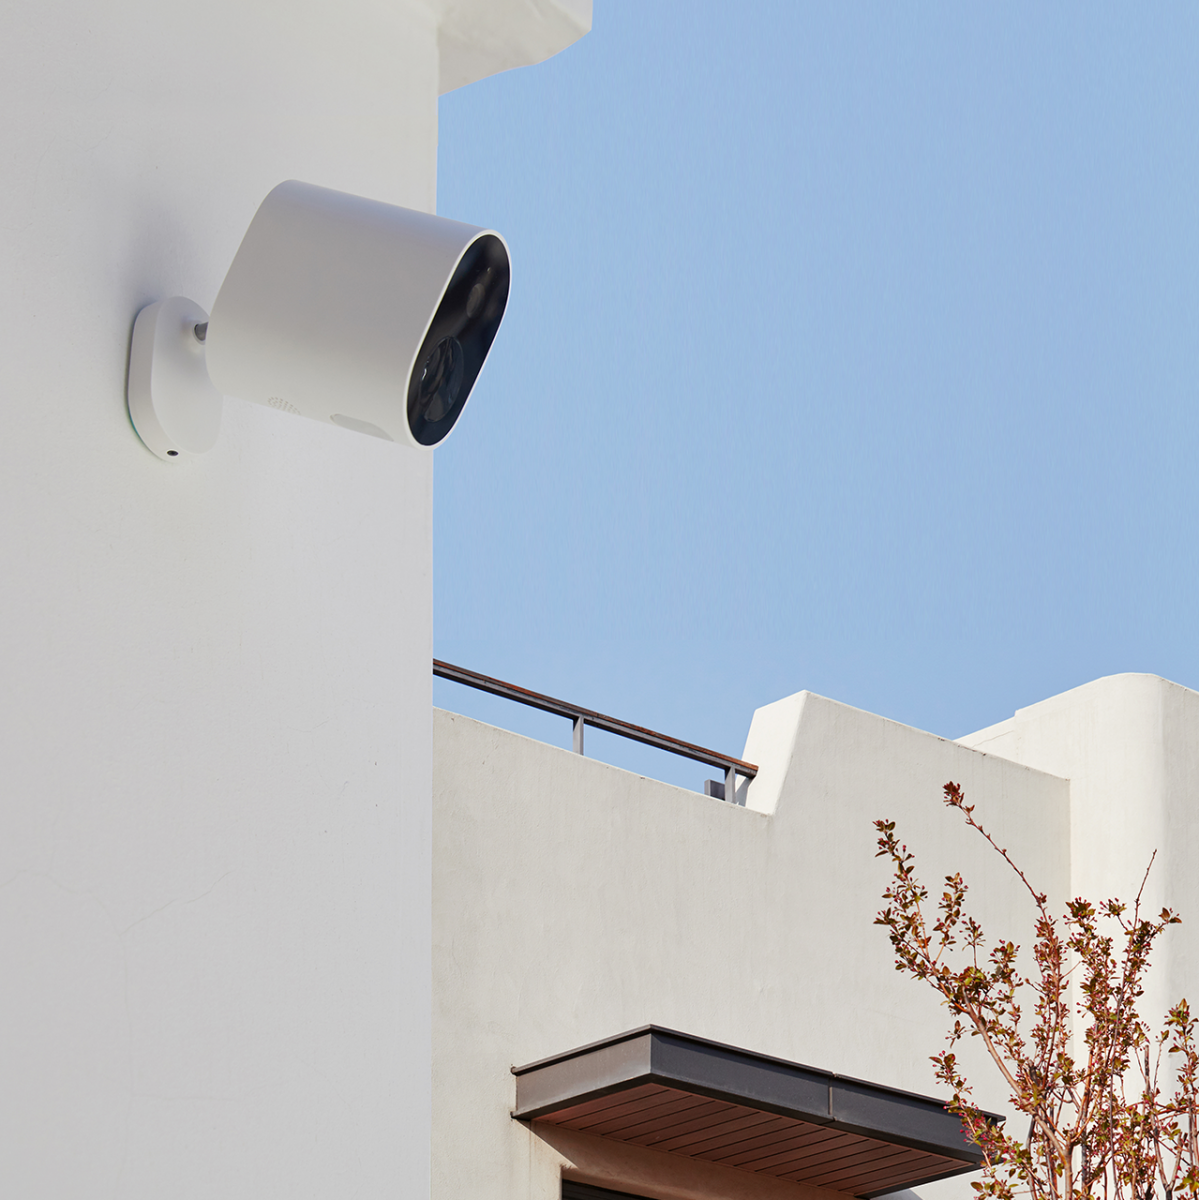 كاميرا مراقبة لاسلكية للاماكن الخارجية تعمل بالبطارية